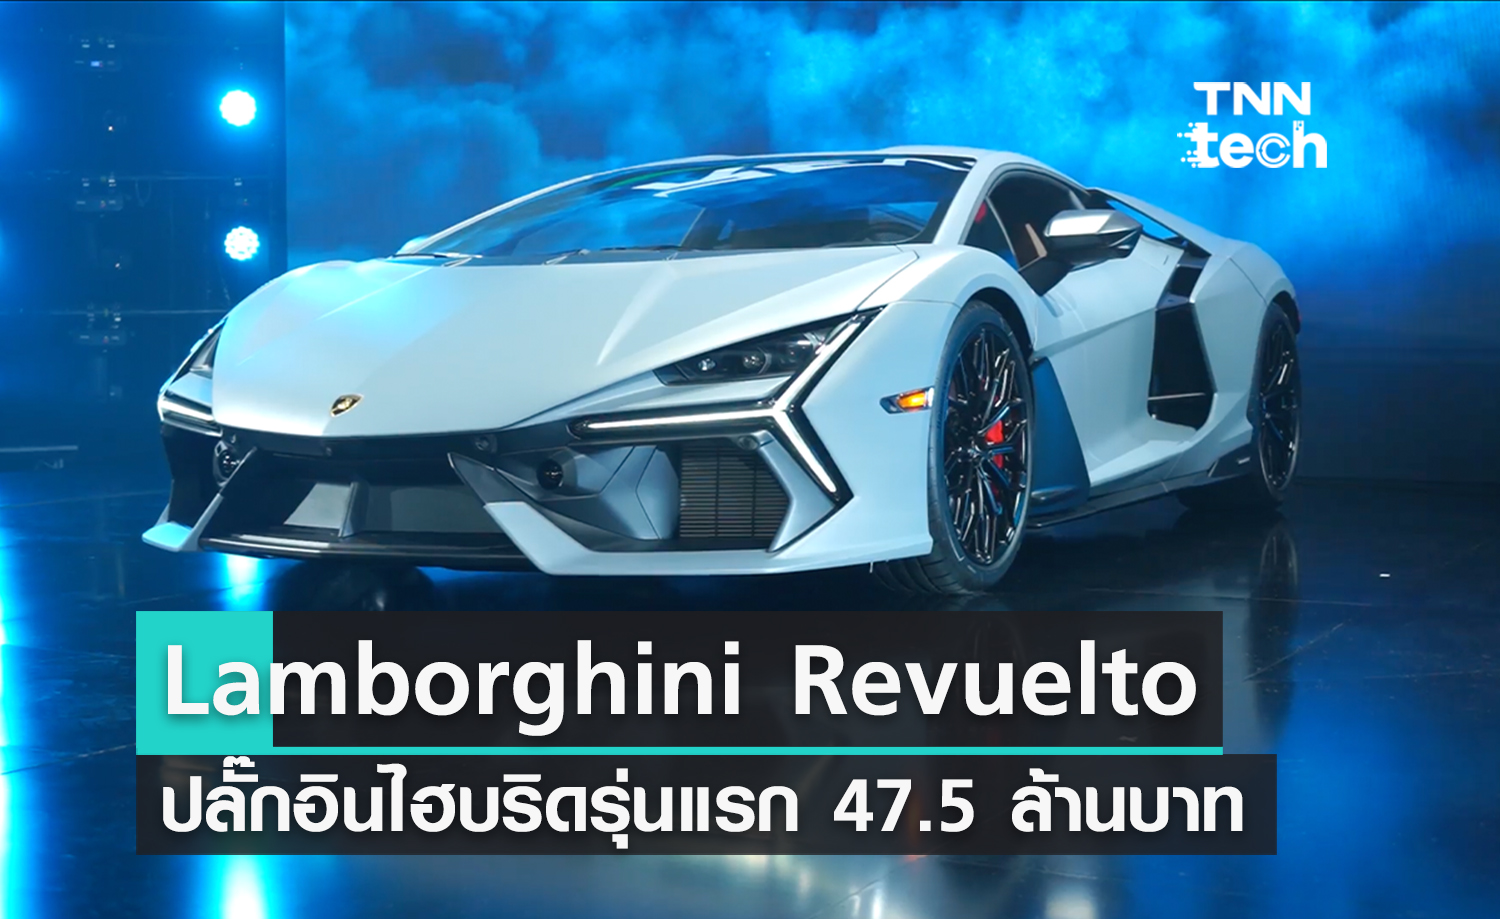 เปิดตัว Lamborghini Revuelto ปลั๊กอินไฮบริดรุ่นแรกของแบรนด์ คิวจองในไทยรอไปถึงปีหน้าแล้ว ราคา 47.5 ล้านบาทมีทอน